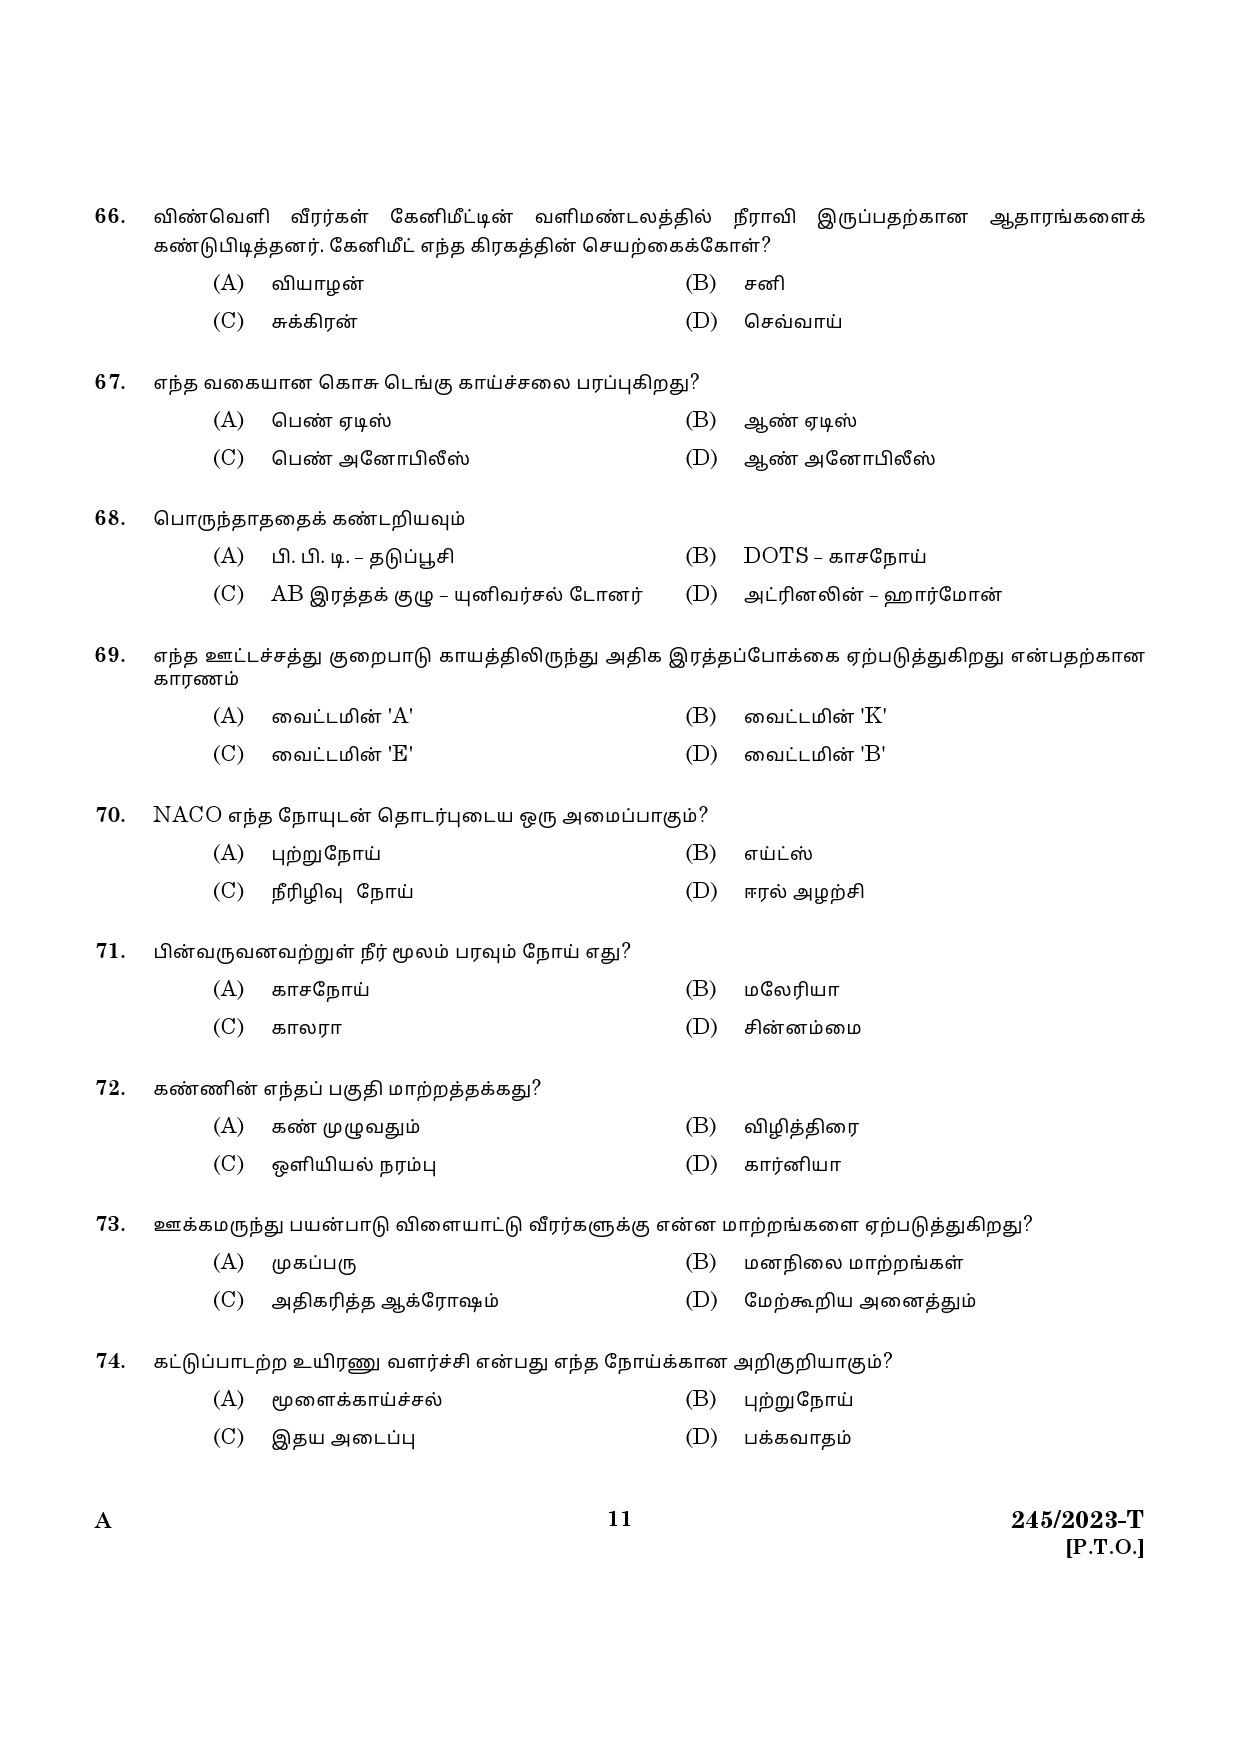 KPSC LGS Tamil Exam 2023 Code 2452023 T 9